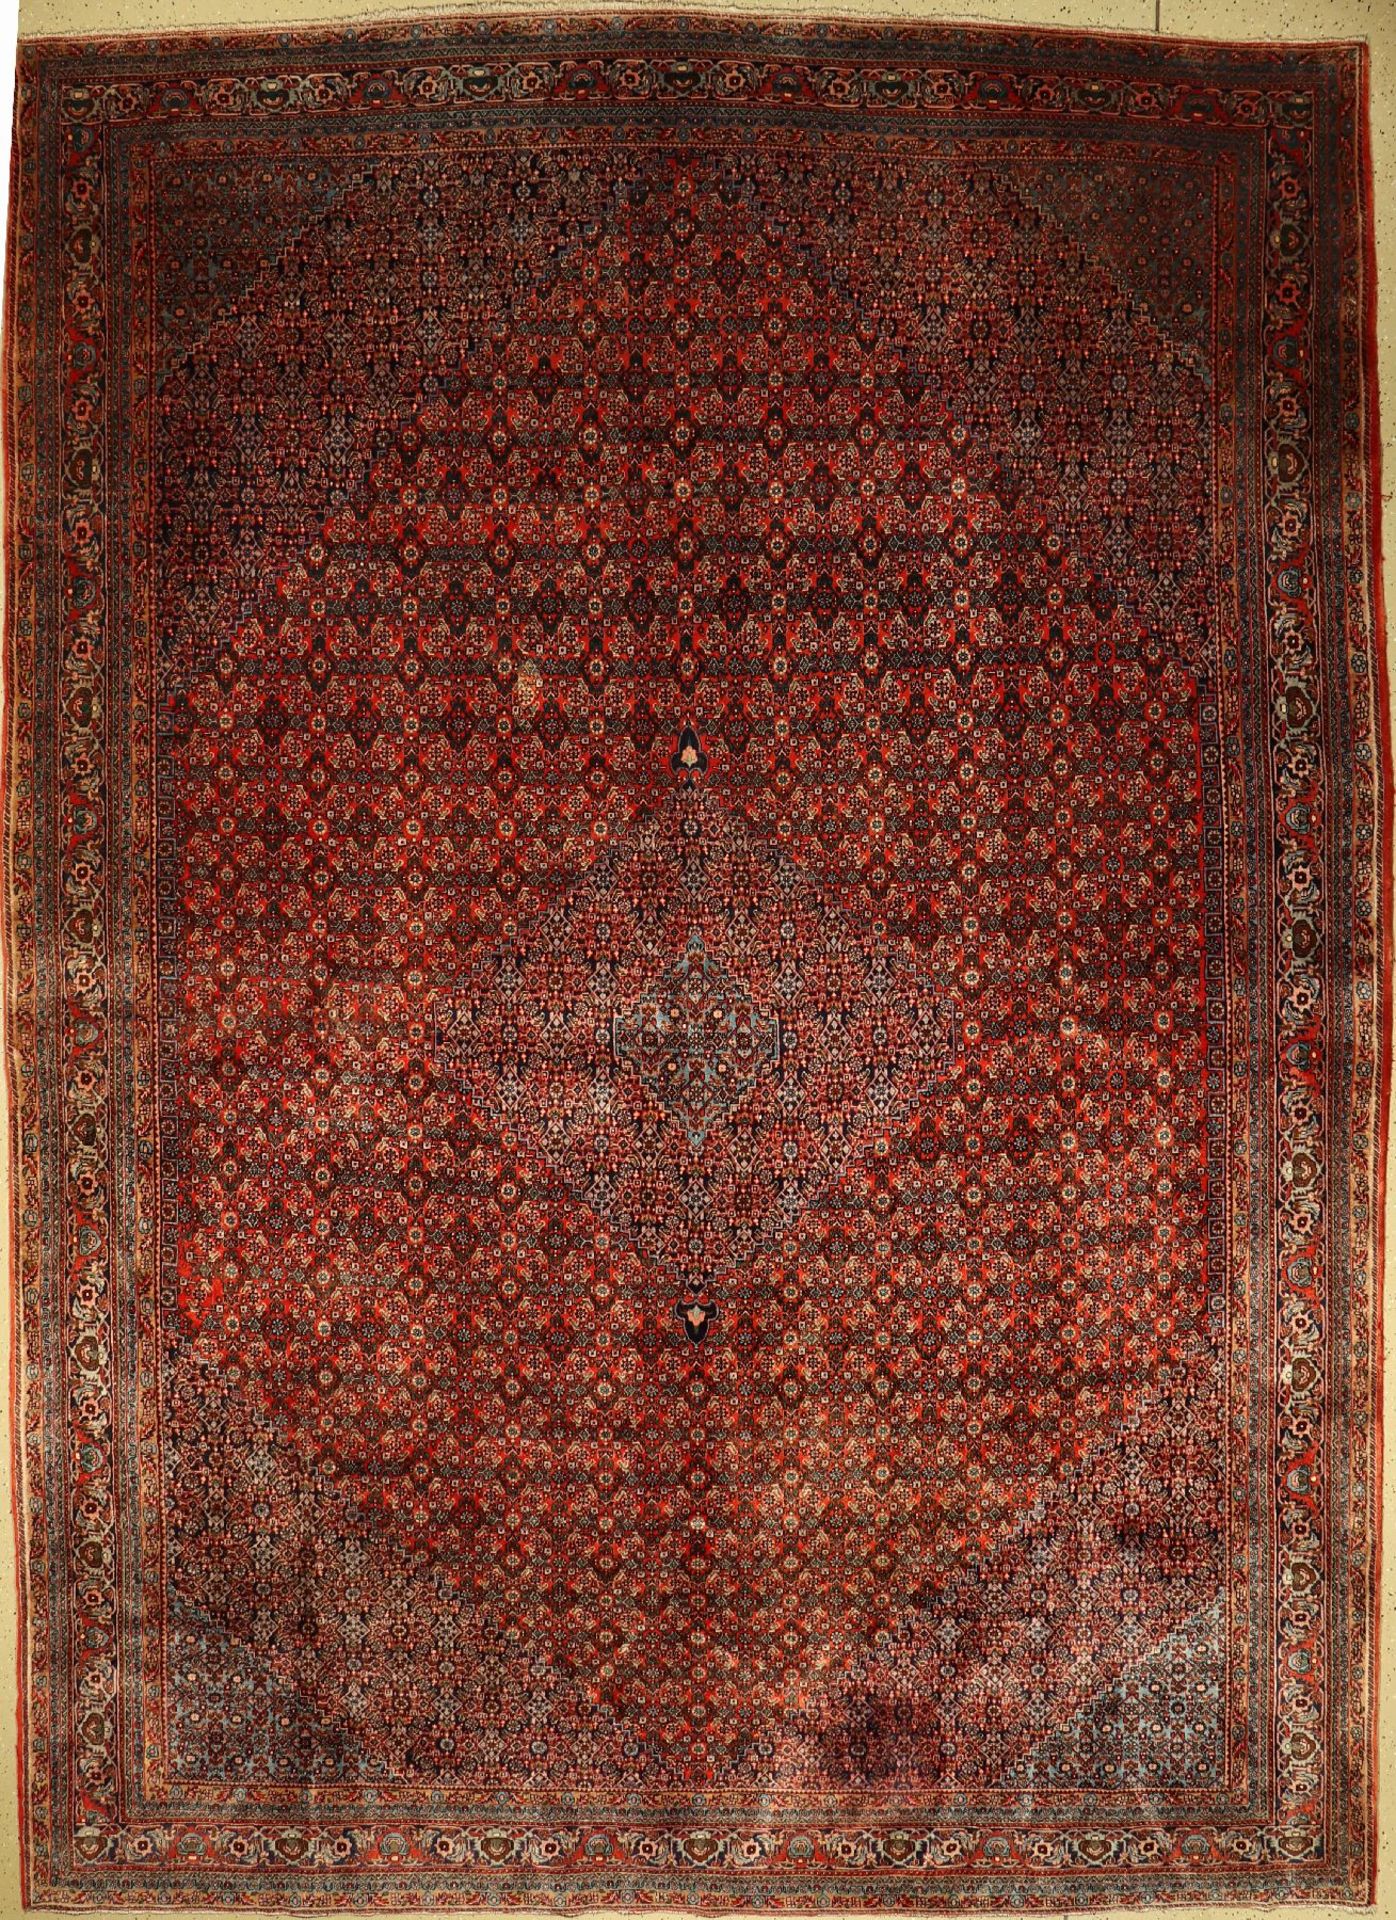 Bidjar alt fein, Persien, um 1940/1950, Korkwolle, ca. 413 x 298 cm, schwere Qualität,EHZ: 2